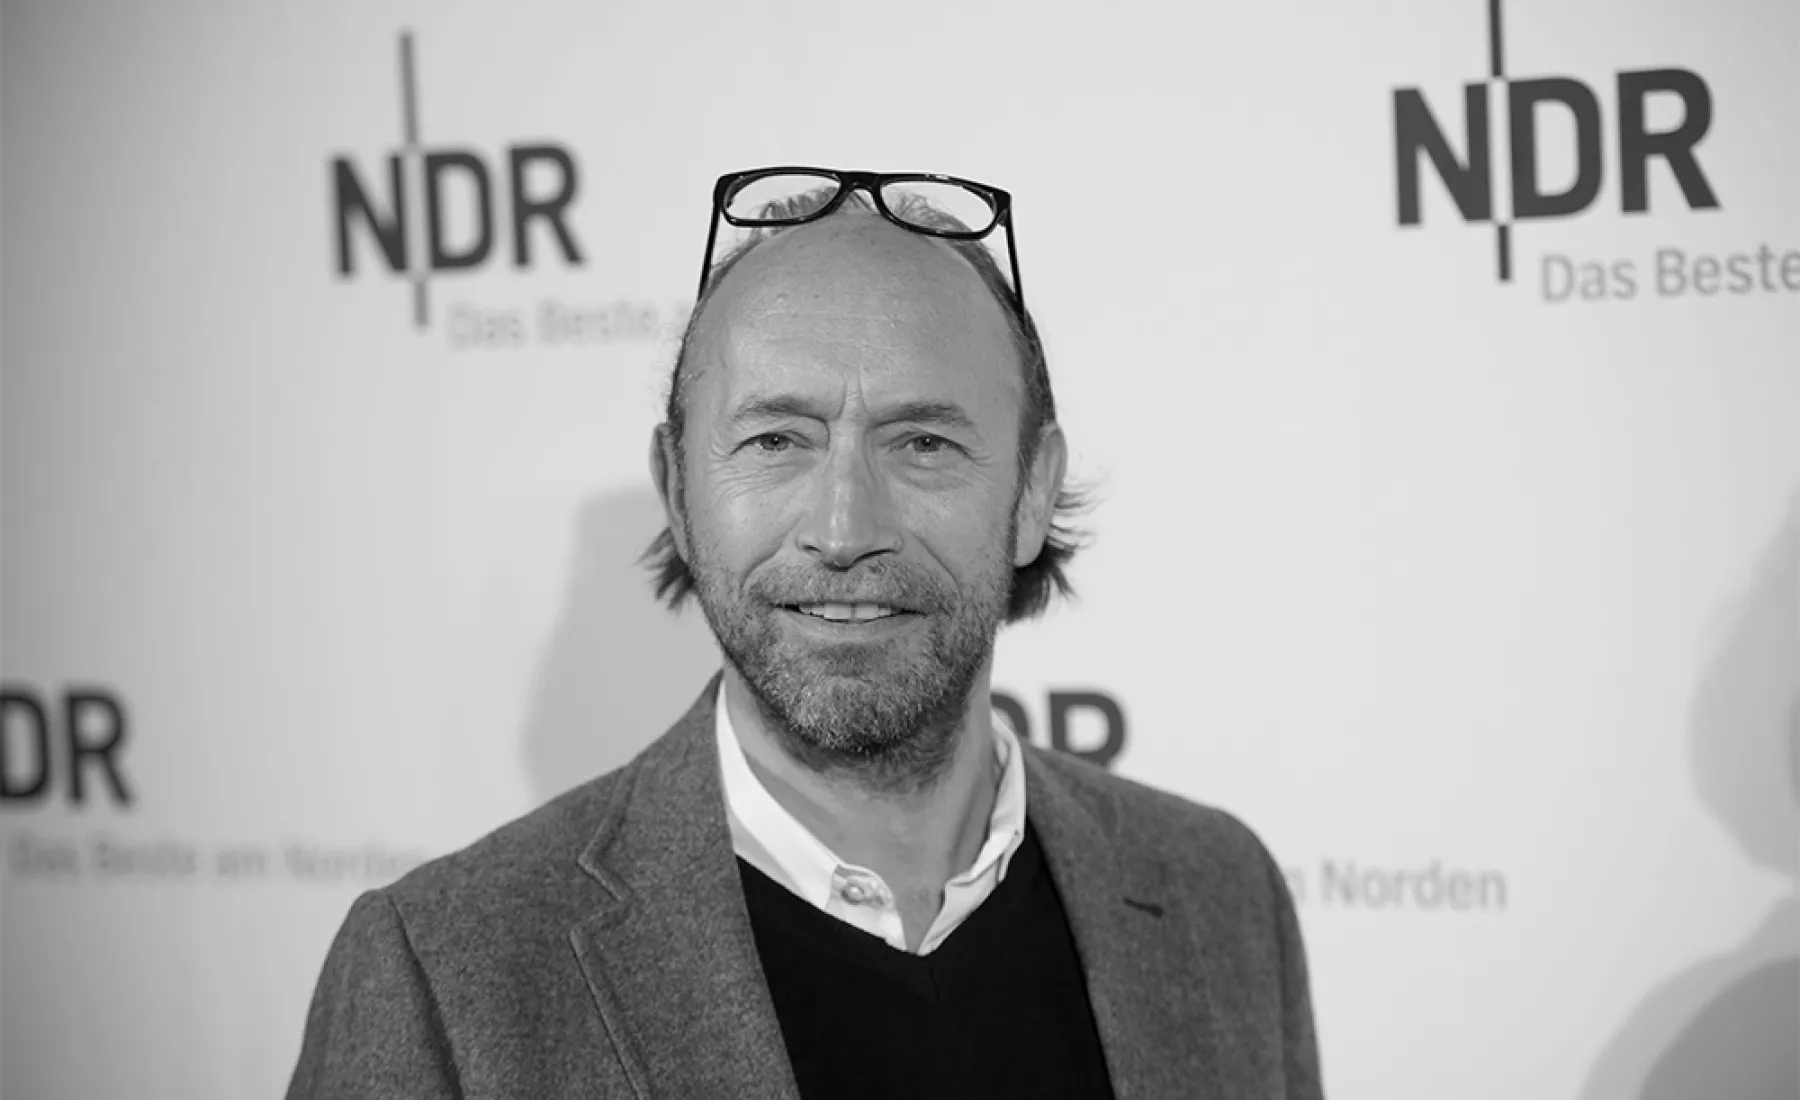 Der Schauspieler Sven Walser, aufgenommen bei einer Präsentation von neuen Folgen der TV-Serie "Neues aus Büttenwarder".